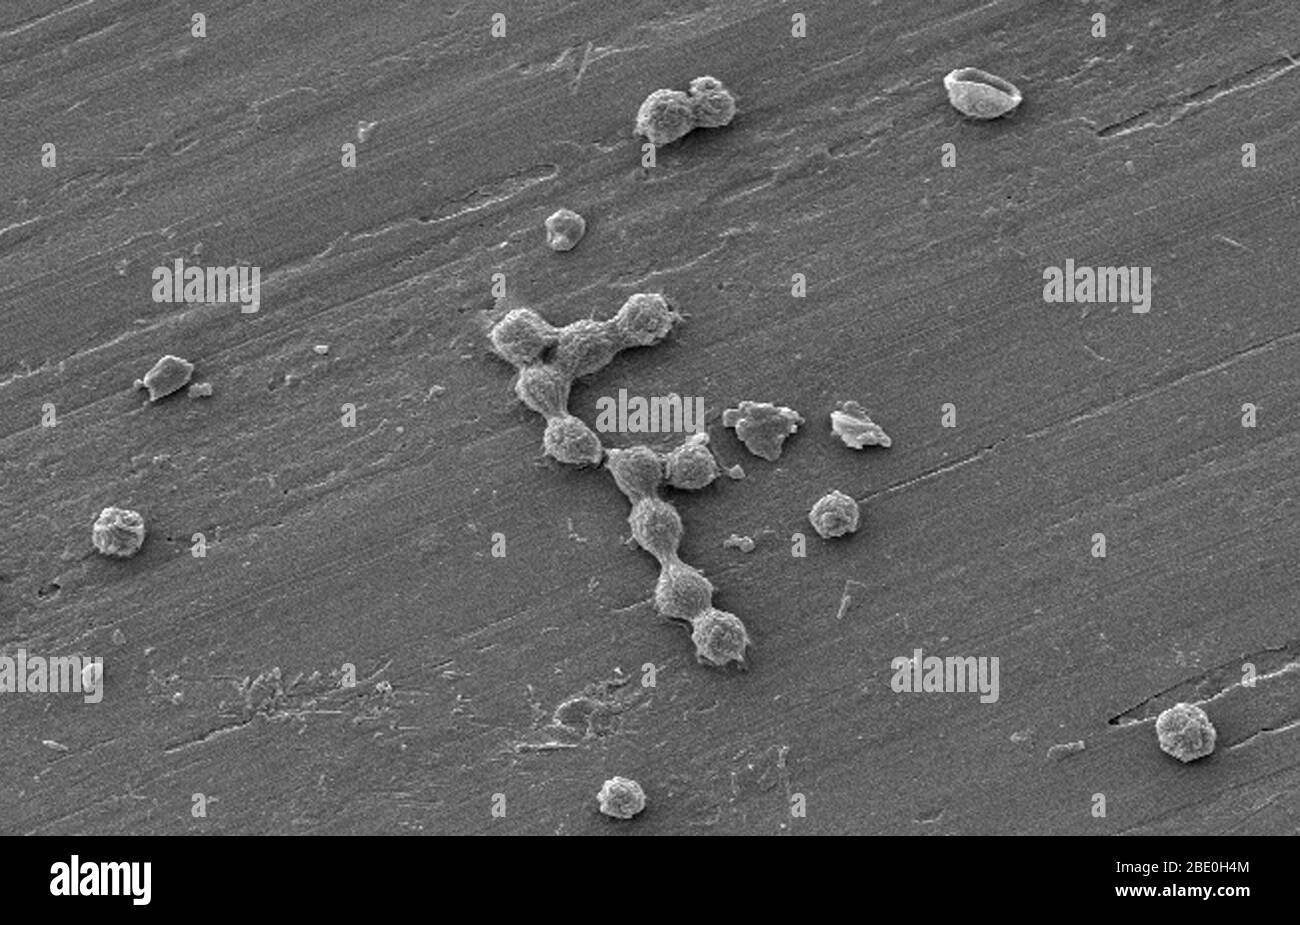 Le amebae vive (FLA) nel gruppo degli Amoebozoi sono cause importanti di malattie nell'uomo e negli animali. SEM di un biofilm di acqua potabile coltivato in laboratorio, con presenza di cisti di Vermamoeba vermiformis (Hartmanella). I batteri acquatici sono stati coltivati come biofilm su acciaio per una settimana. V. vermiformis sono stati poi aggiunti, e fagocitizzati i batteri che si sono moltiplicati all'interno delle vescicole che sono diventate cisti in cui i batteri vivranno fino a che non si rompono. Vermamoeba vermiformis un'ameba libera (FLA), è diffusa in natura ed è stata isolata dal suolo, dall'acqua dolce, dall'aria e da un Foto Stock